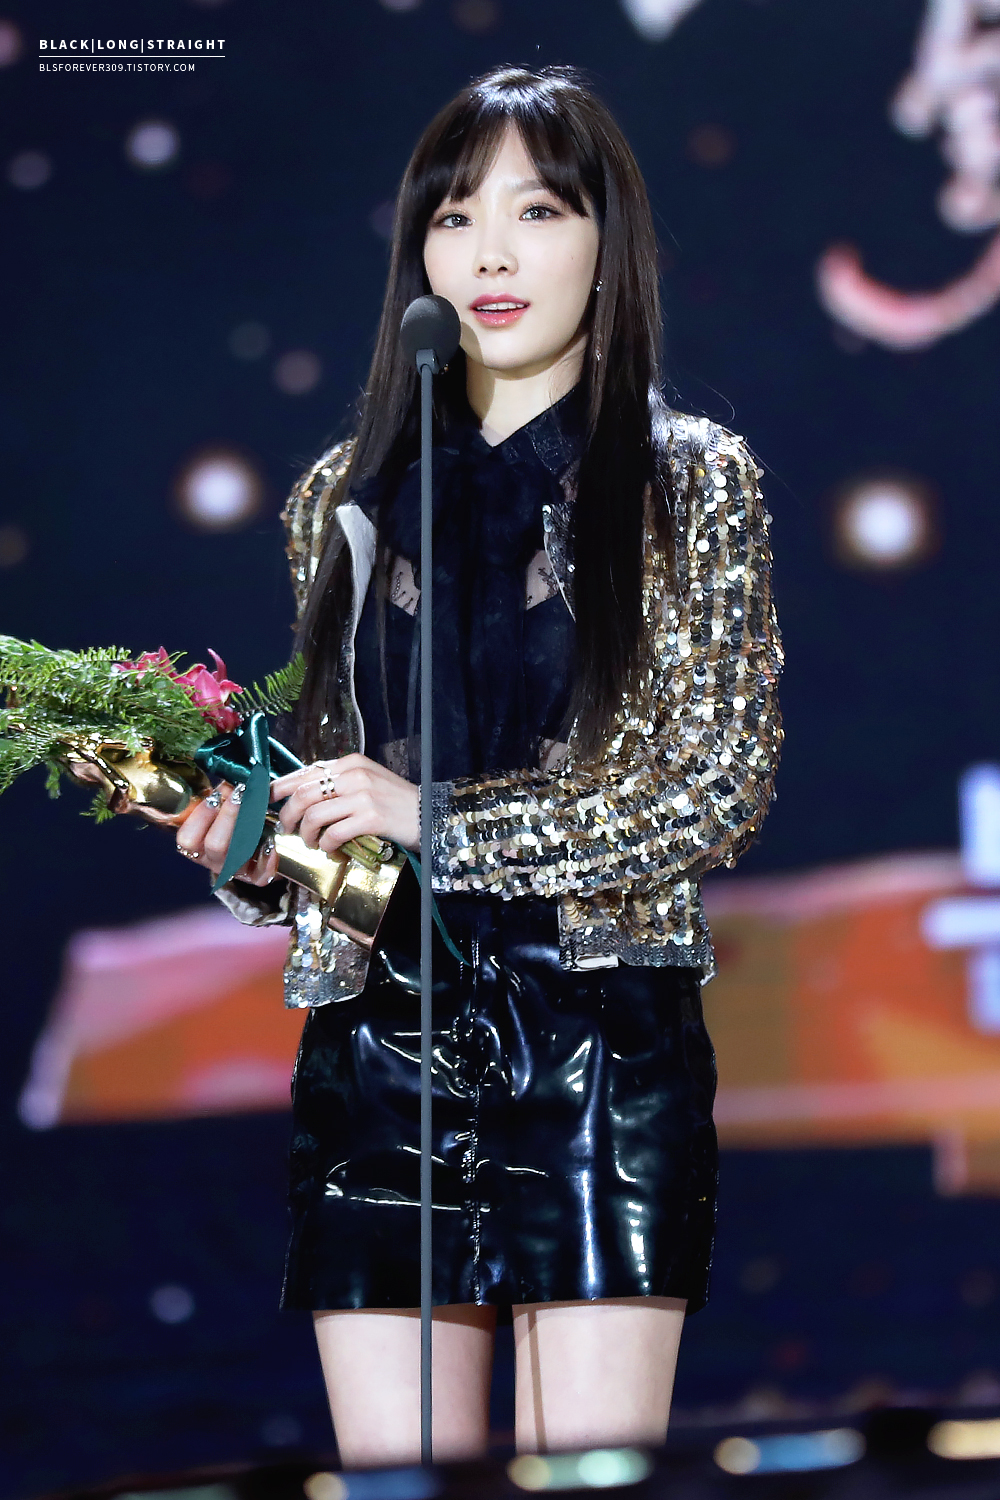 [PIC][13-01-2017]Hình ảnh mới nhất từ "31st Golden Disk Awards" của TaeYeon và MC SeoHyun - Page 3 276FE135587F061D1D19FE